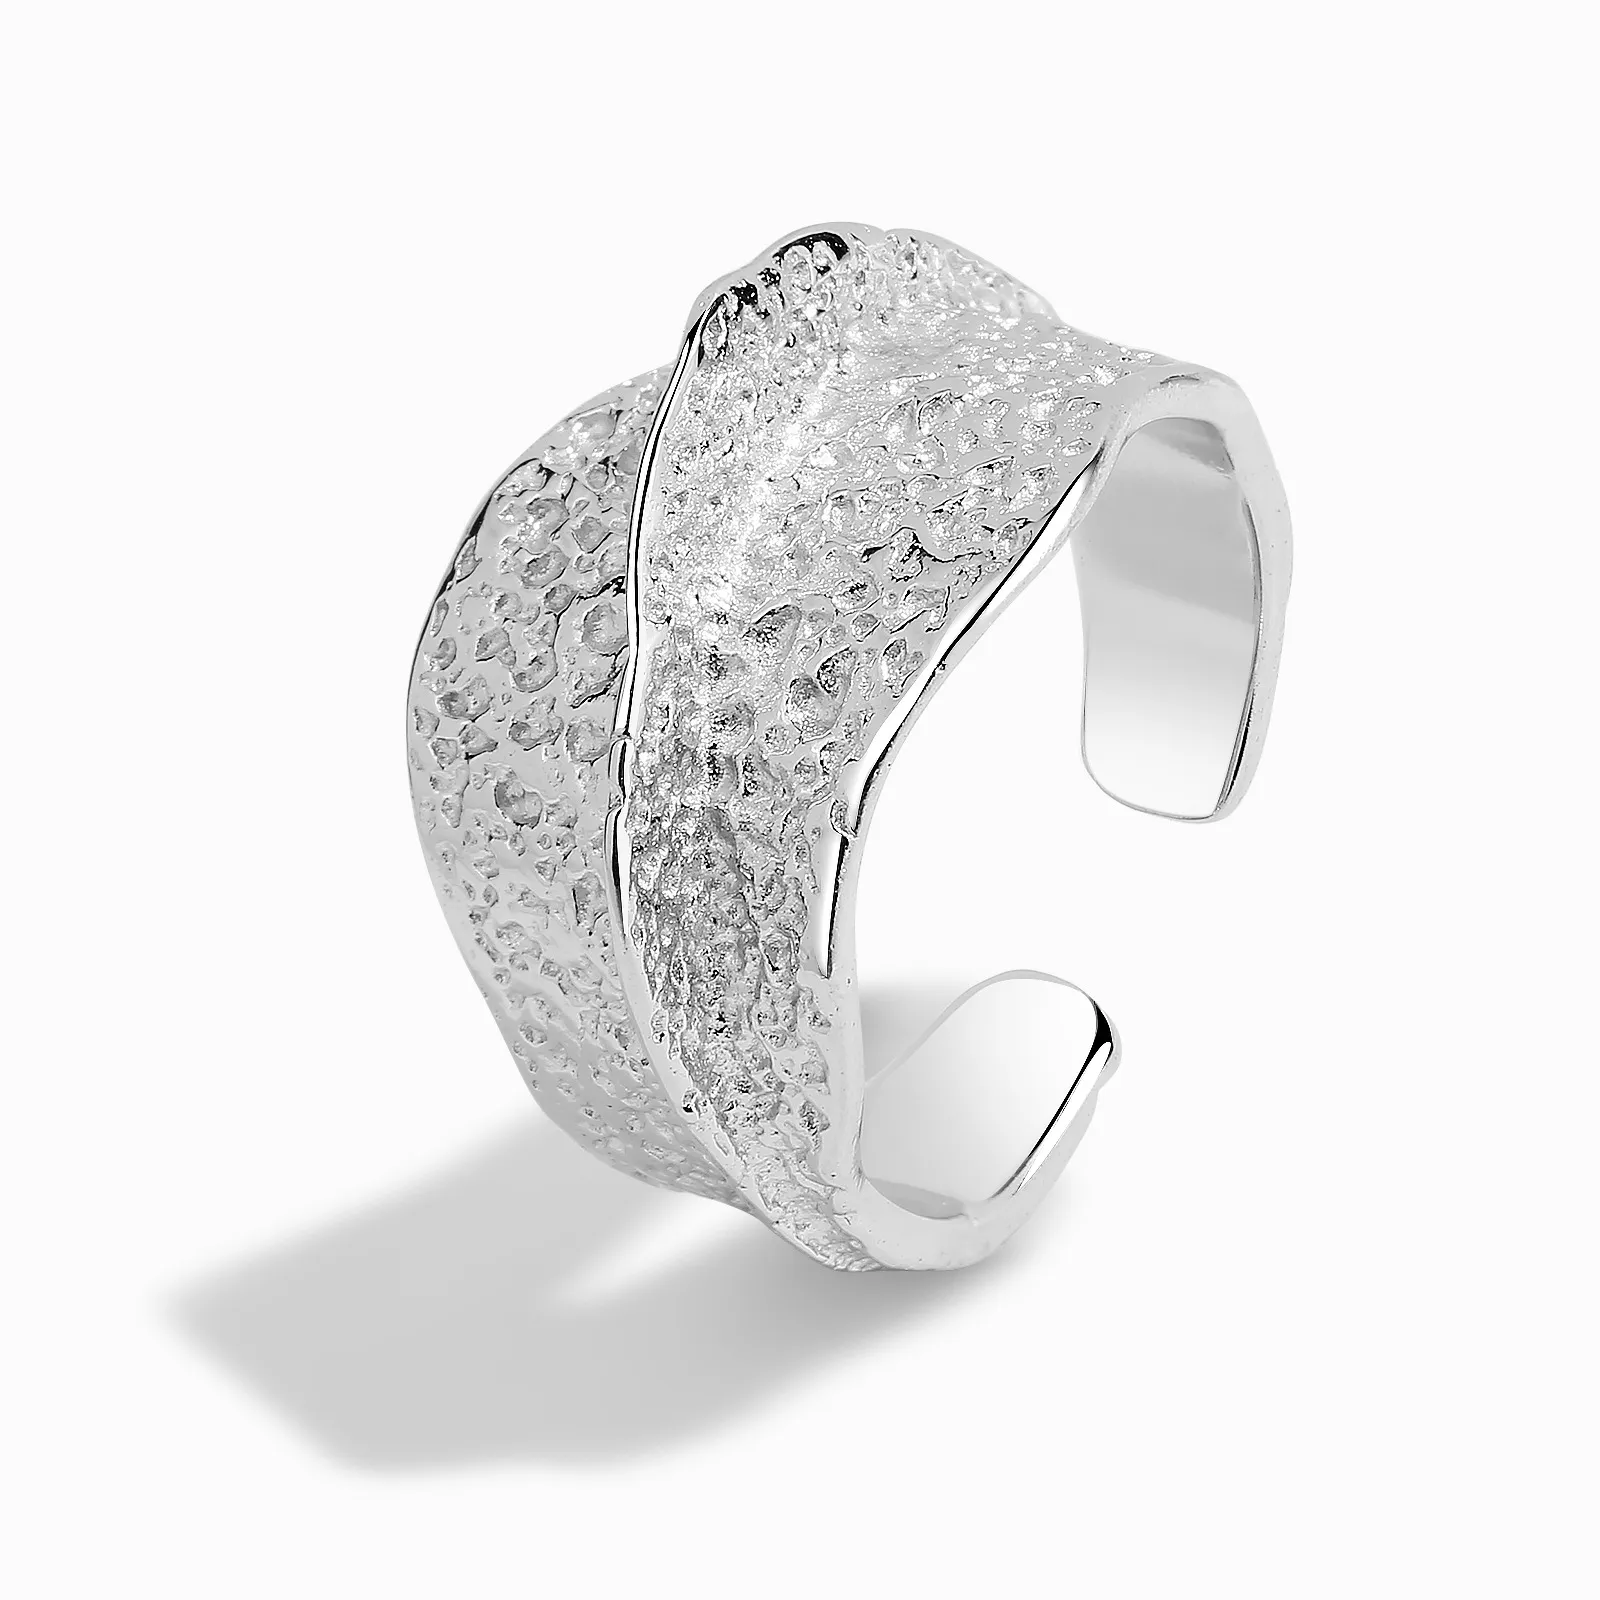 Gorąca sprzedaż s925 srebro w Europie i Ameryce, popularny francuski otwarty pierścień dla kobiet